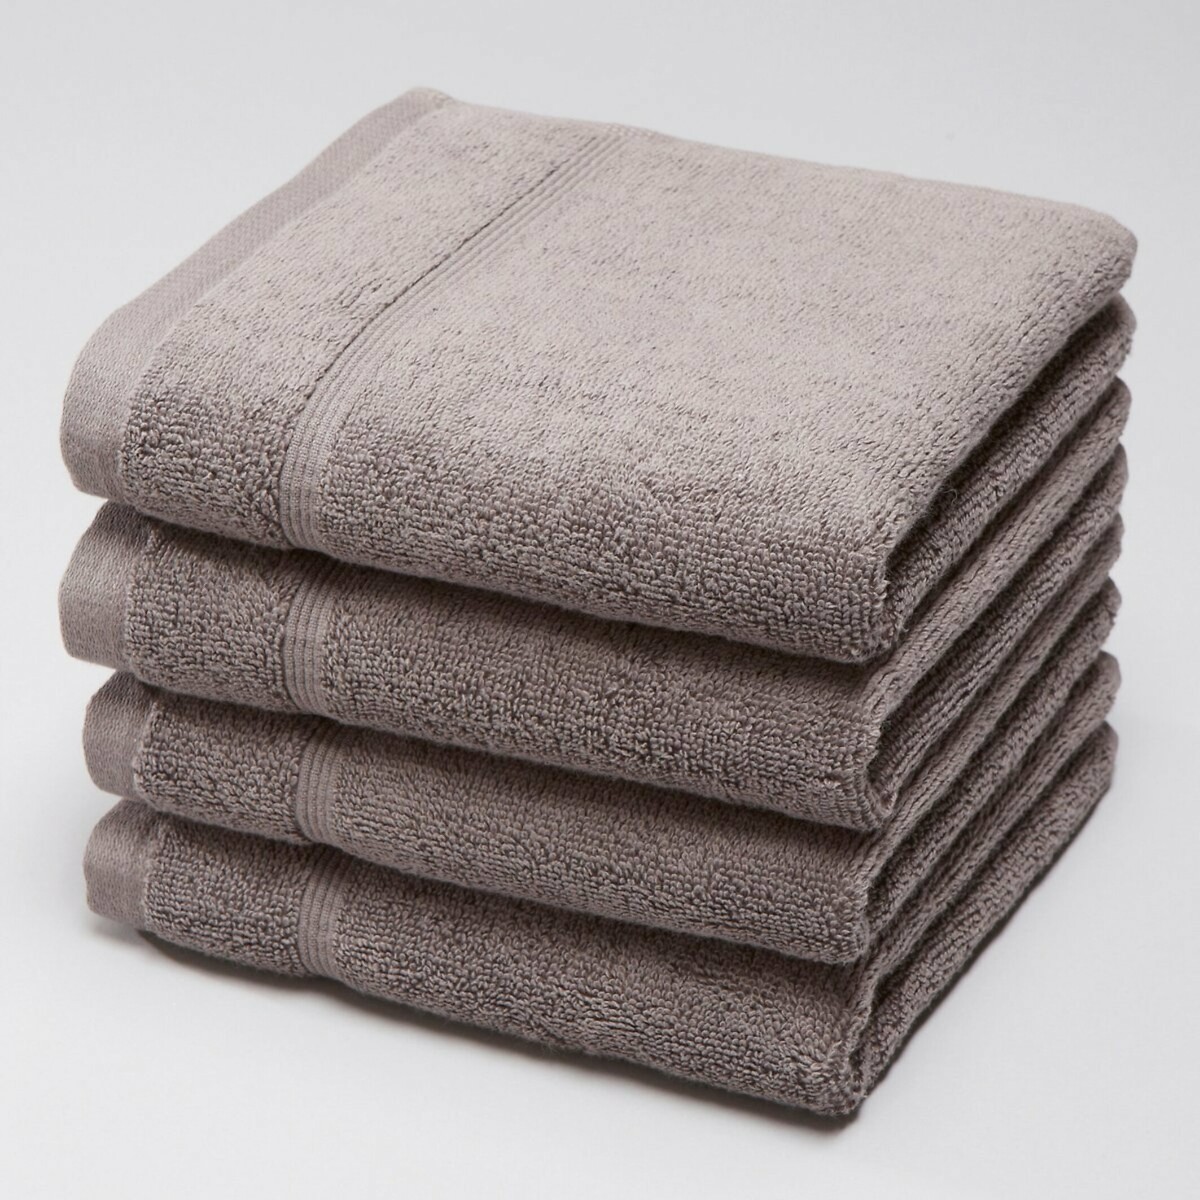 Комплект из 4 гостевых полотенец из махровой ткани 600 гм2 30 x 30 см серый